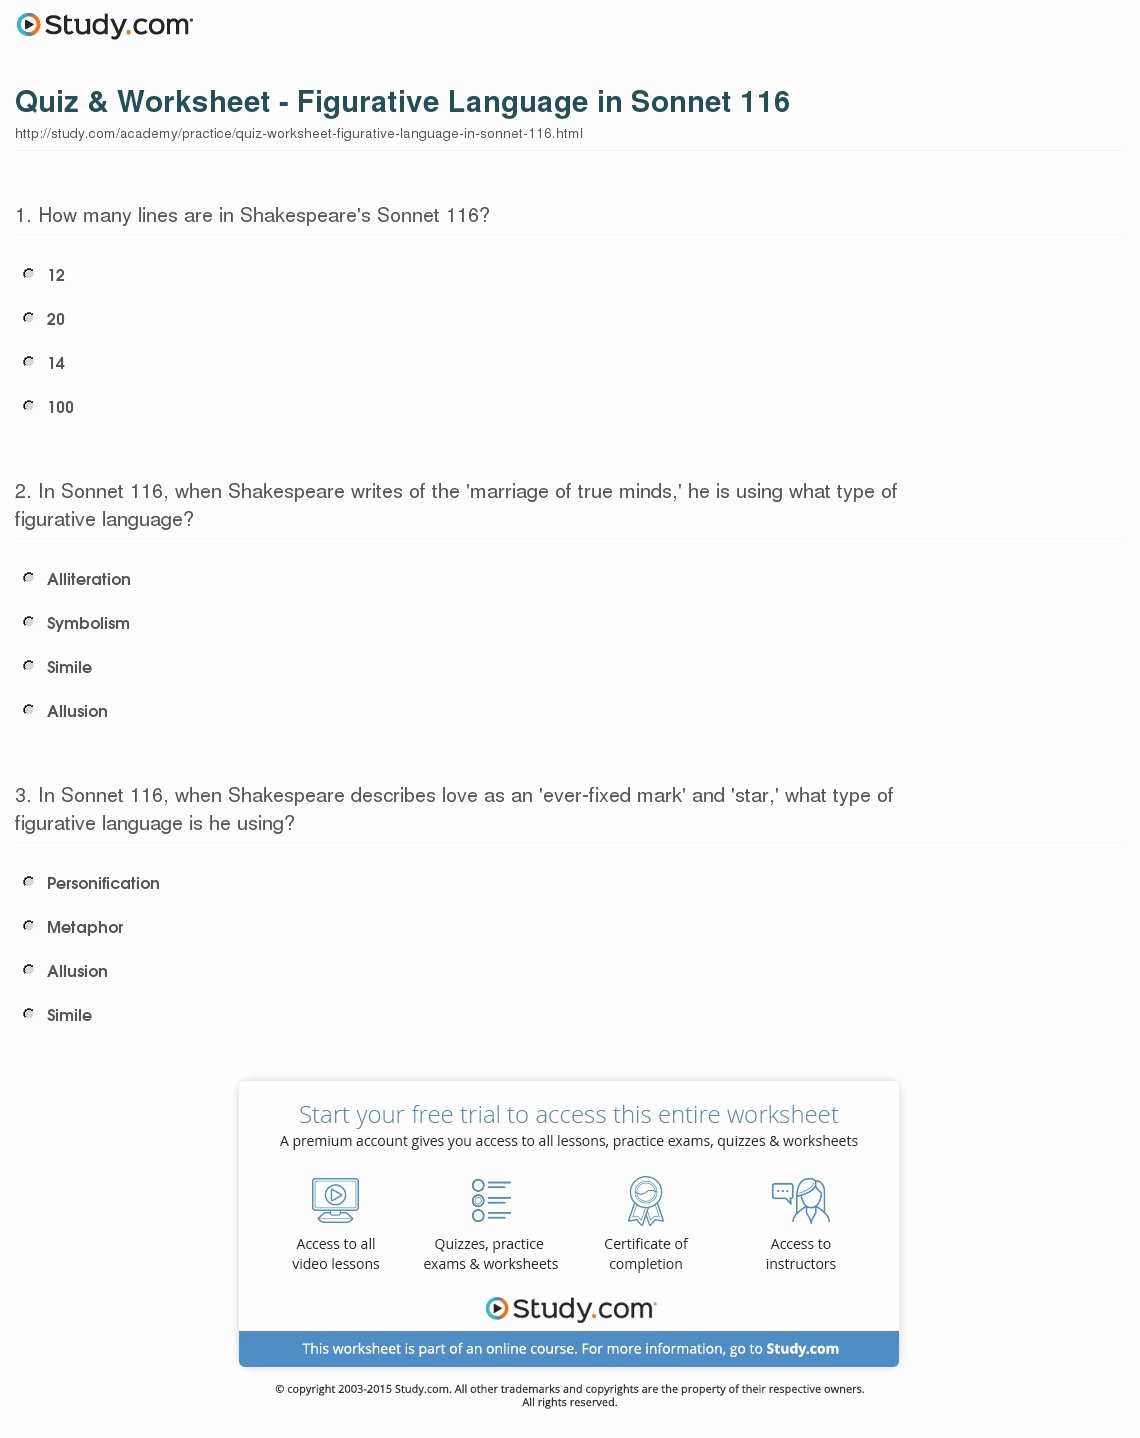 Figurative Language Worksheet 2 Answers Elegant Quiz &amp; Worksheet Figurative Language In sonnet 116